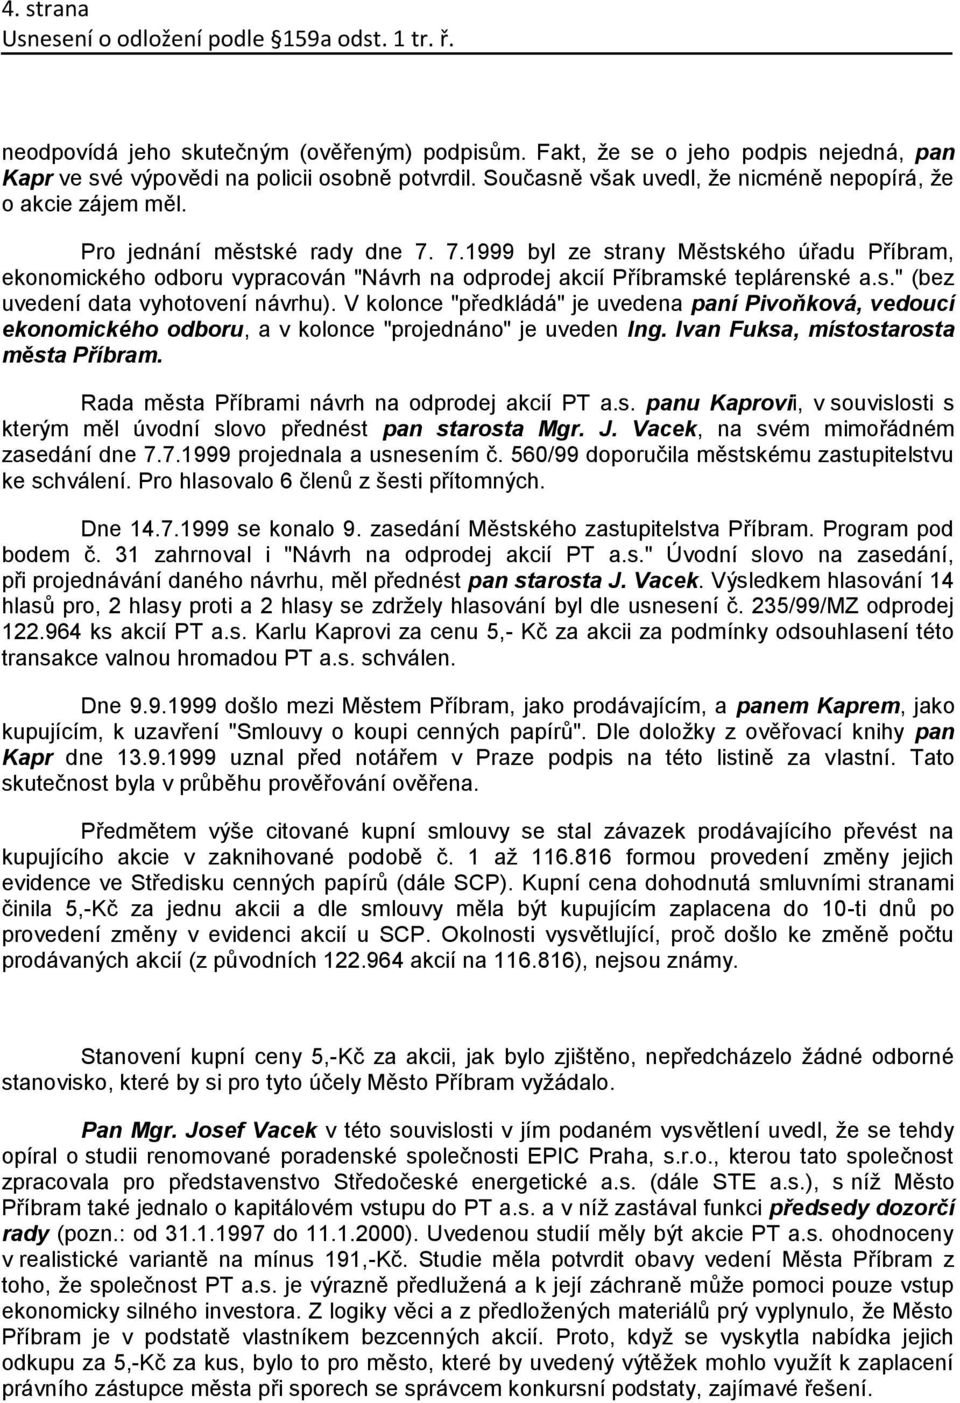 7.1999 byl ze strany Městského úřadu Příbram, ekonomického odboru vypracován "Návrh na odprodej akcií Příbramské teplárenské a.s." (bez uvedení data vyhotovení návrhu).